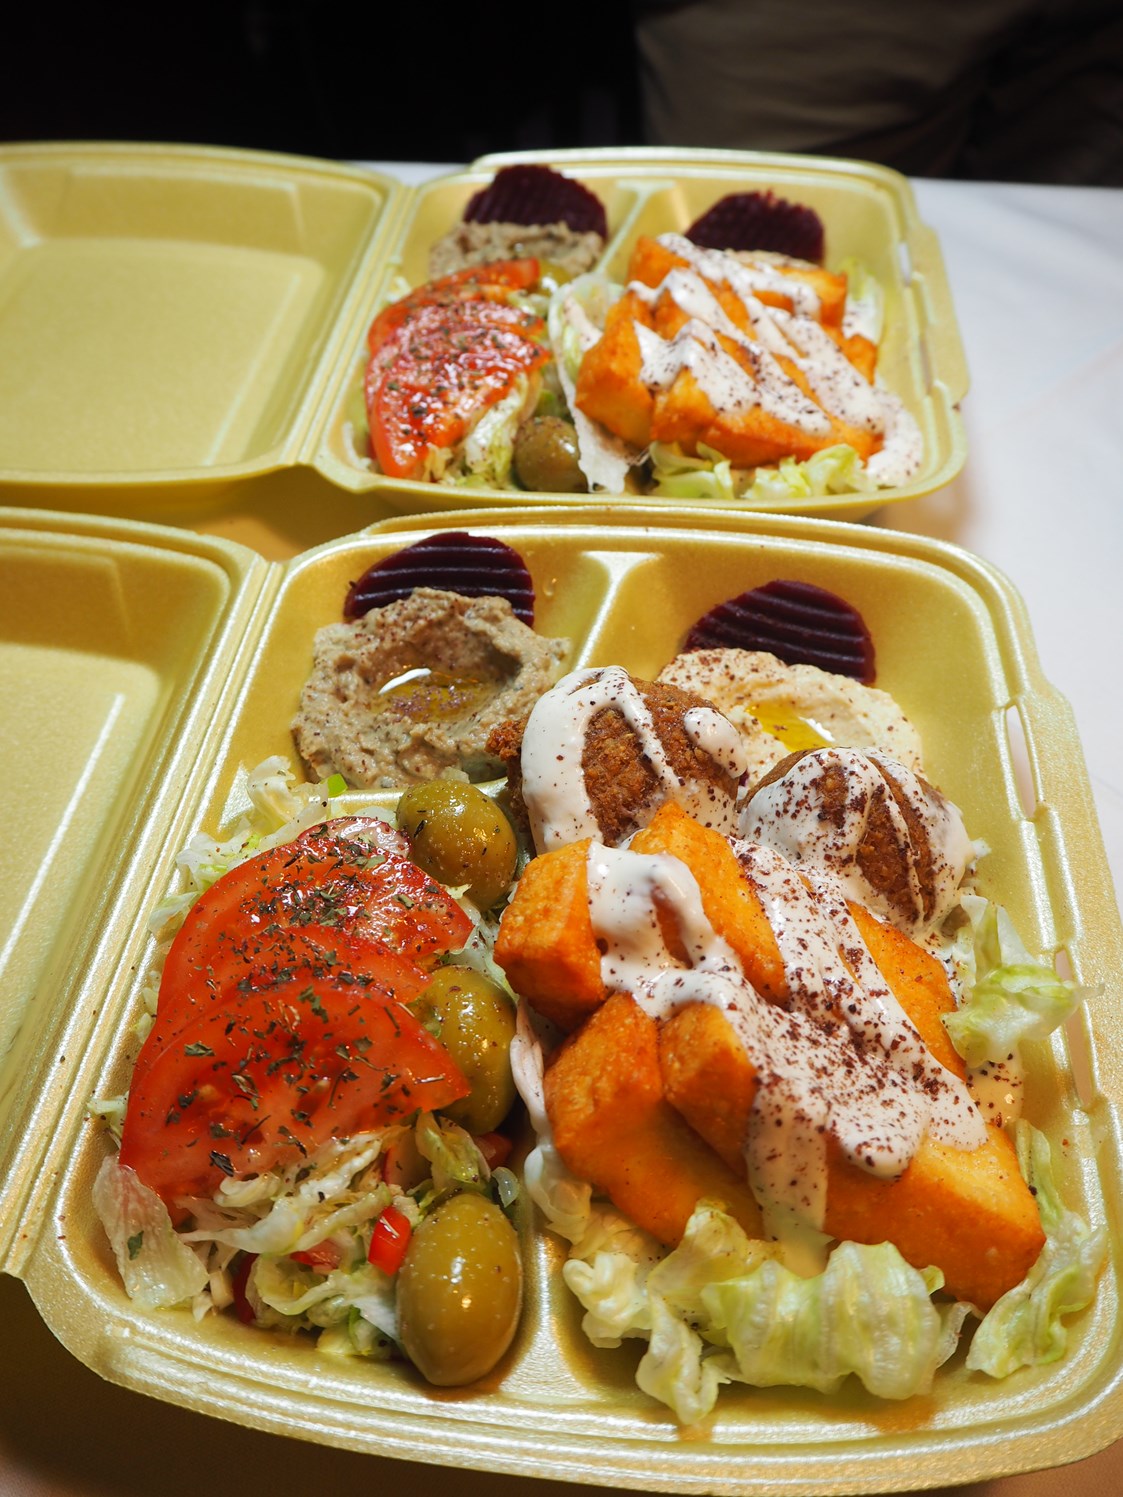 vegetarisches veganes Restaurant: Unser vegetarischer Falafel-Haloumi-Teller verpackt zum Mitnehmen  - Orient Restaurant Der Express